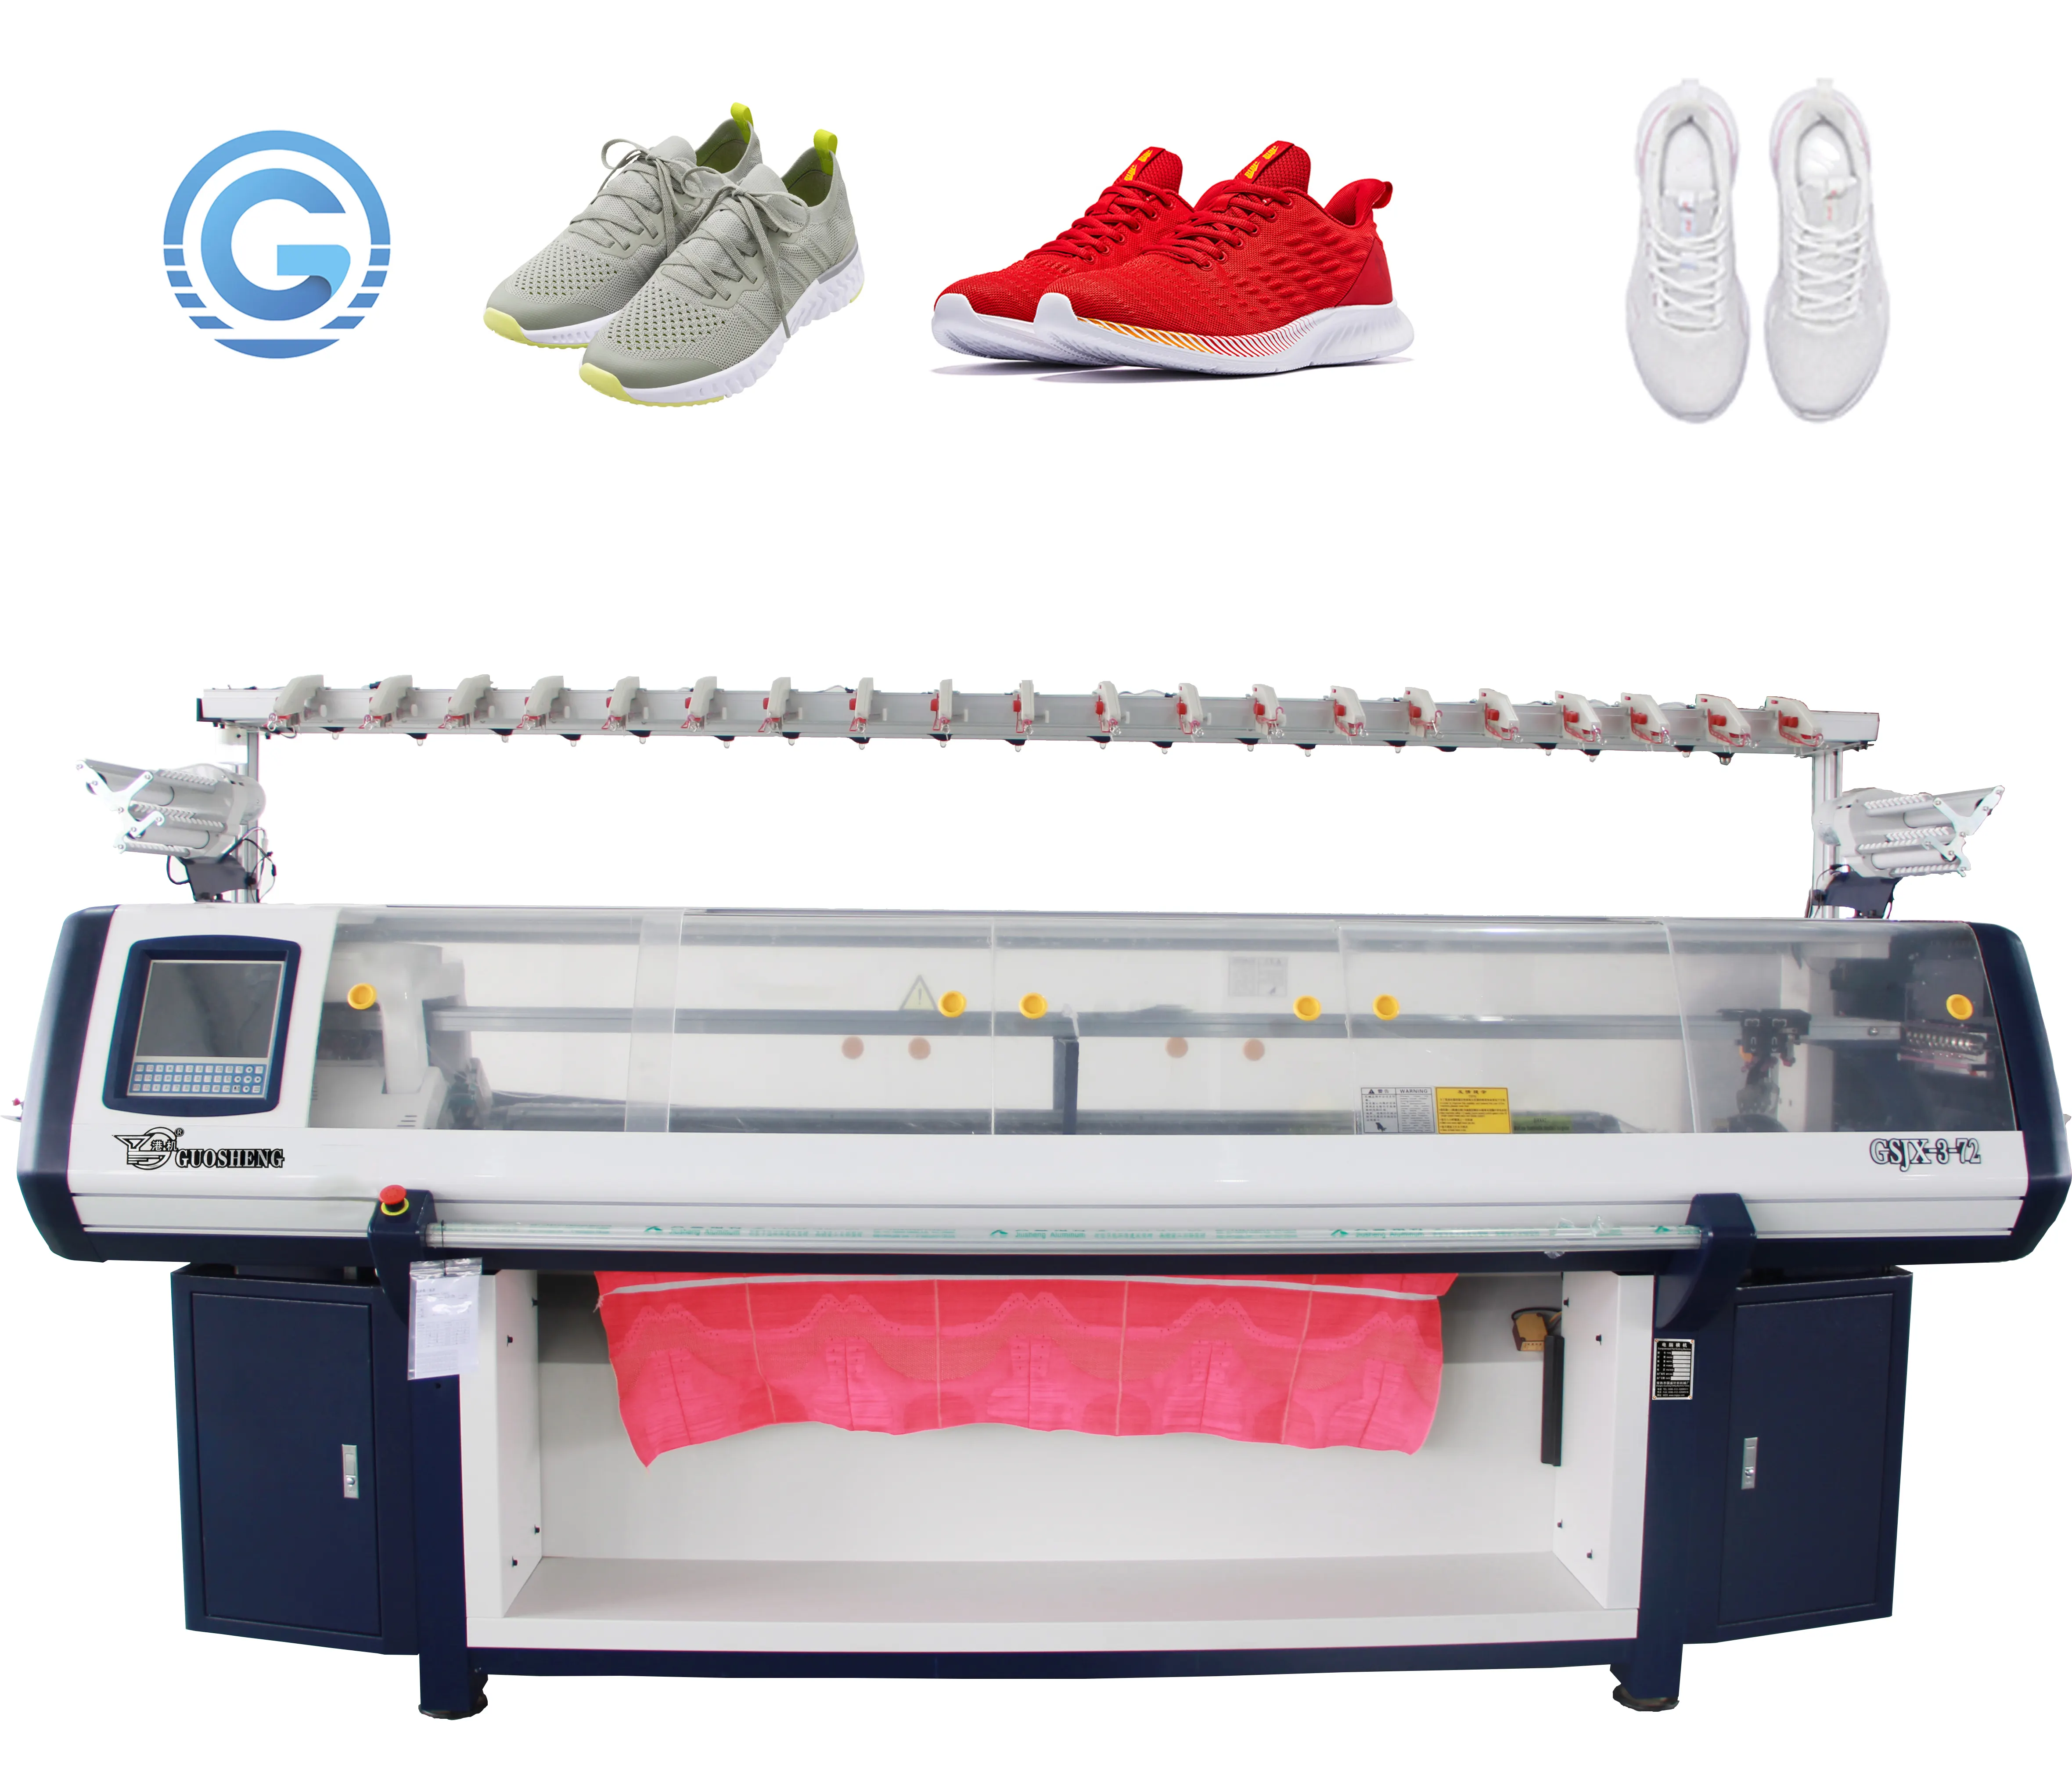 Machine à tricoter sur chaussures de sport chinois, 36 "14gg 3 système, prix d'usine